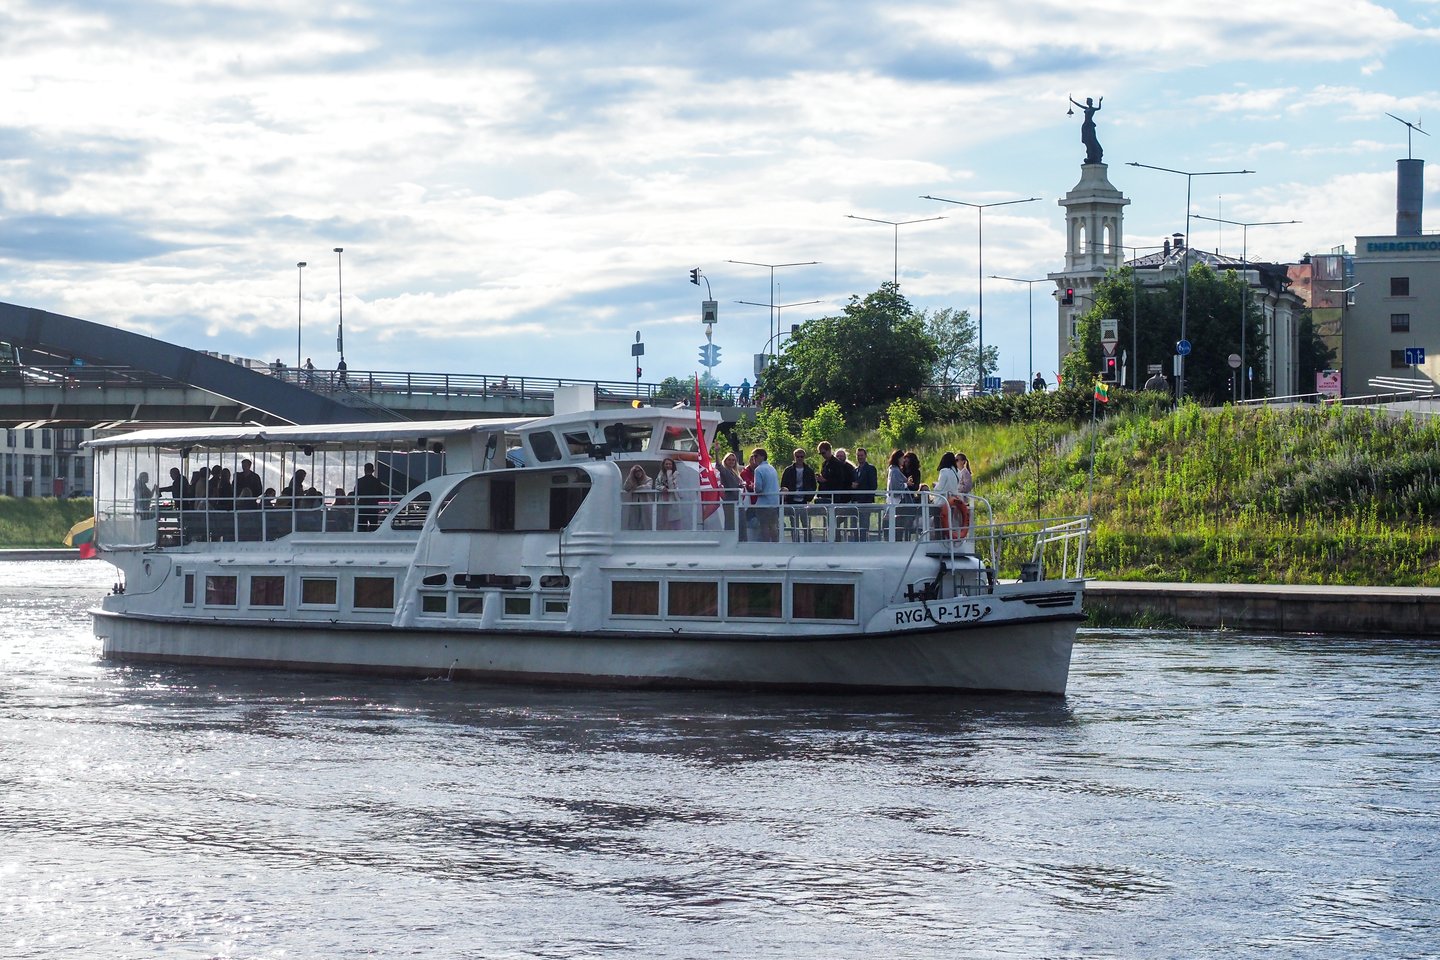  Keleivinis laivas „Ryga“ jau daugiau nei pusę šimtmečio yra tapęs antruoju Vilniaus simboliu.<br> V. Ščiavinsko nuotr.